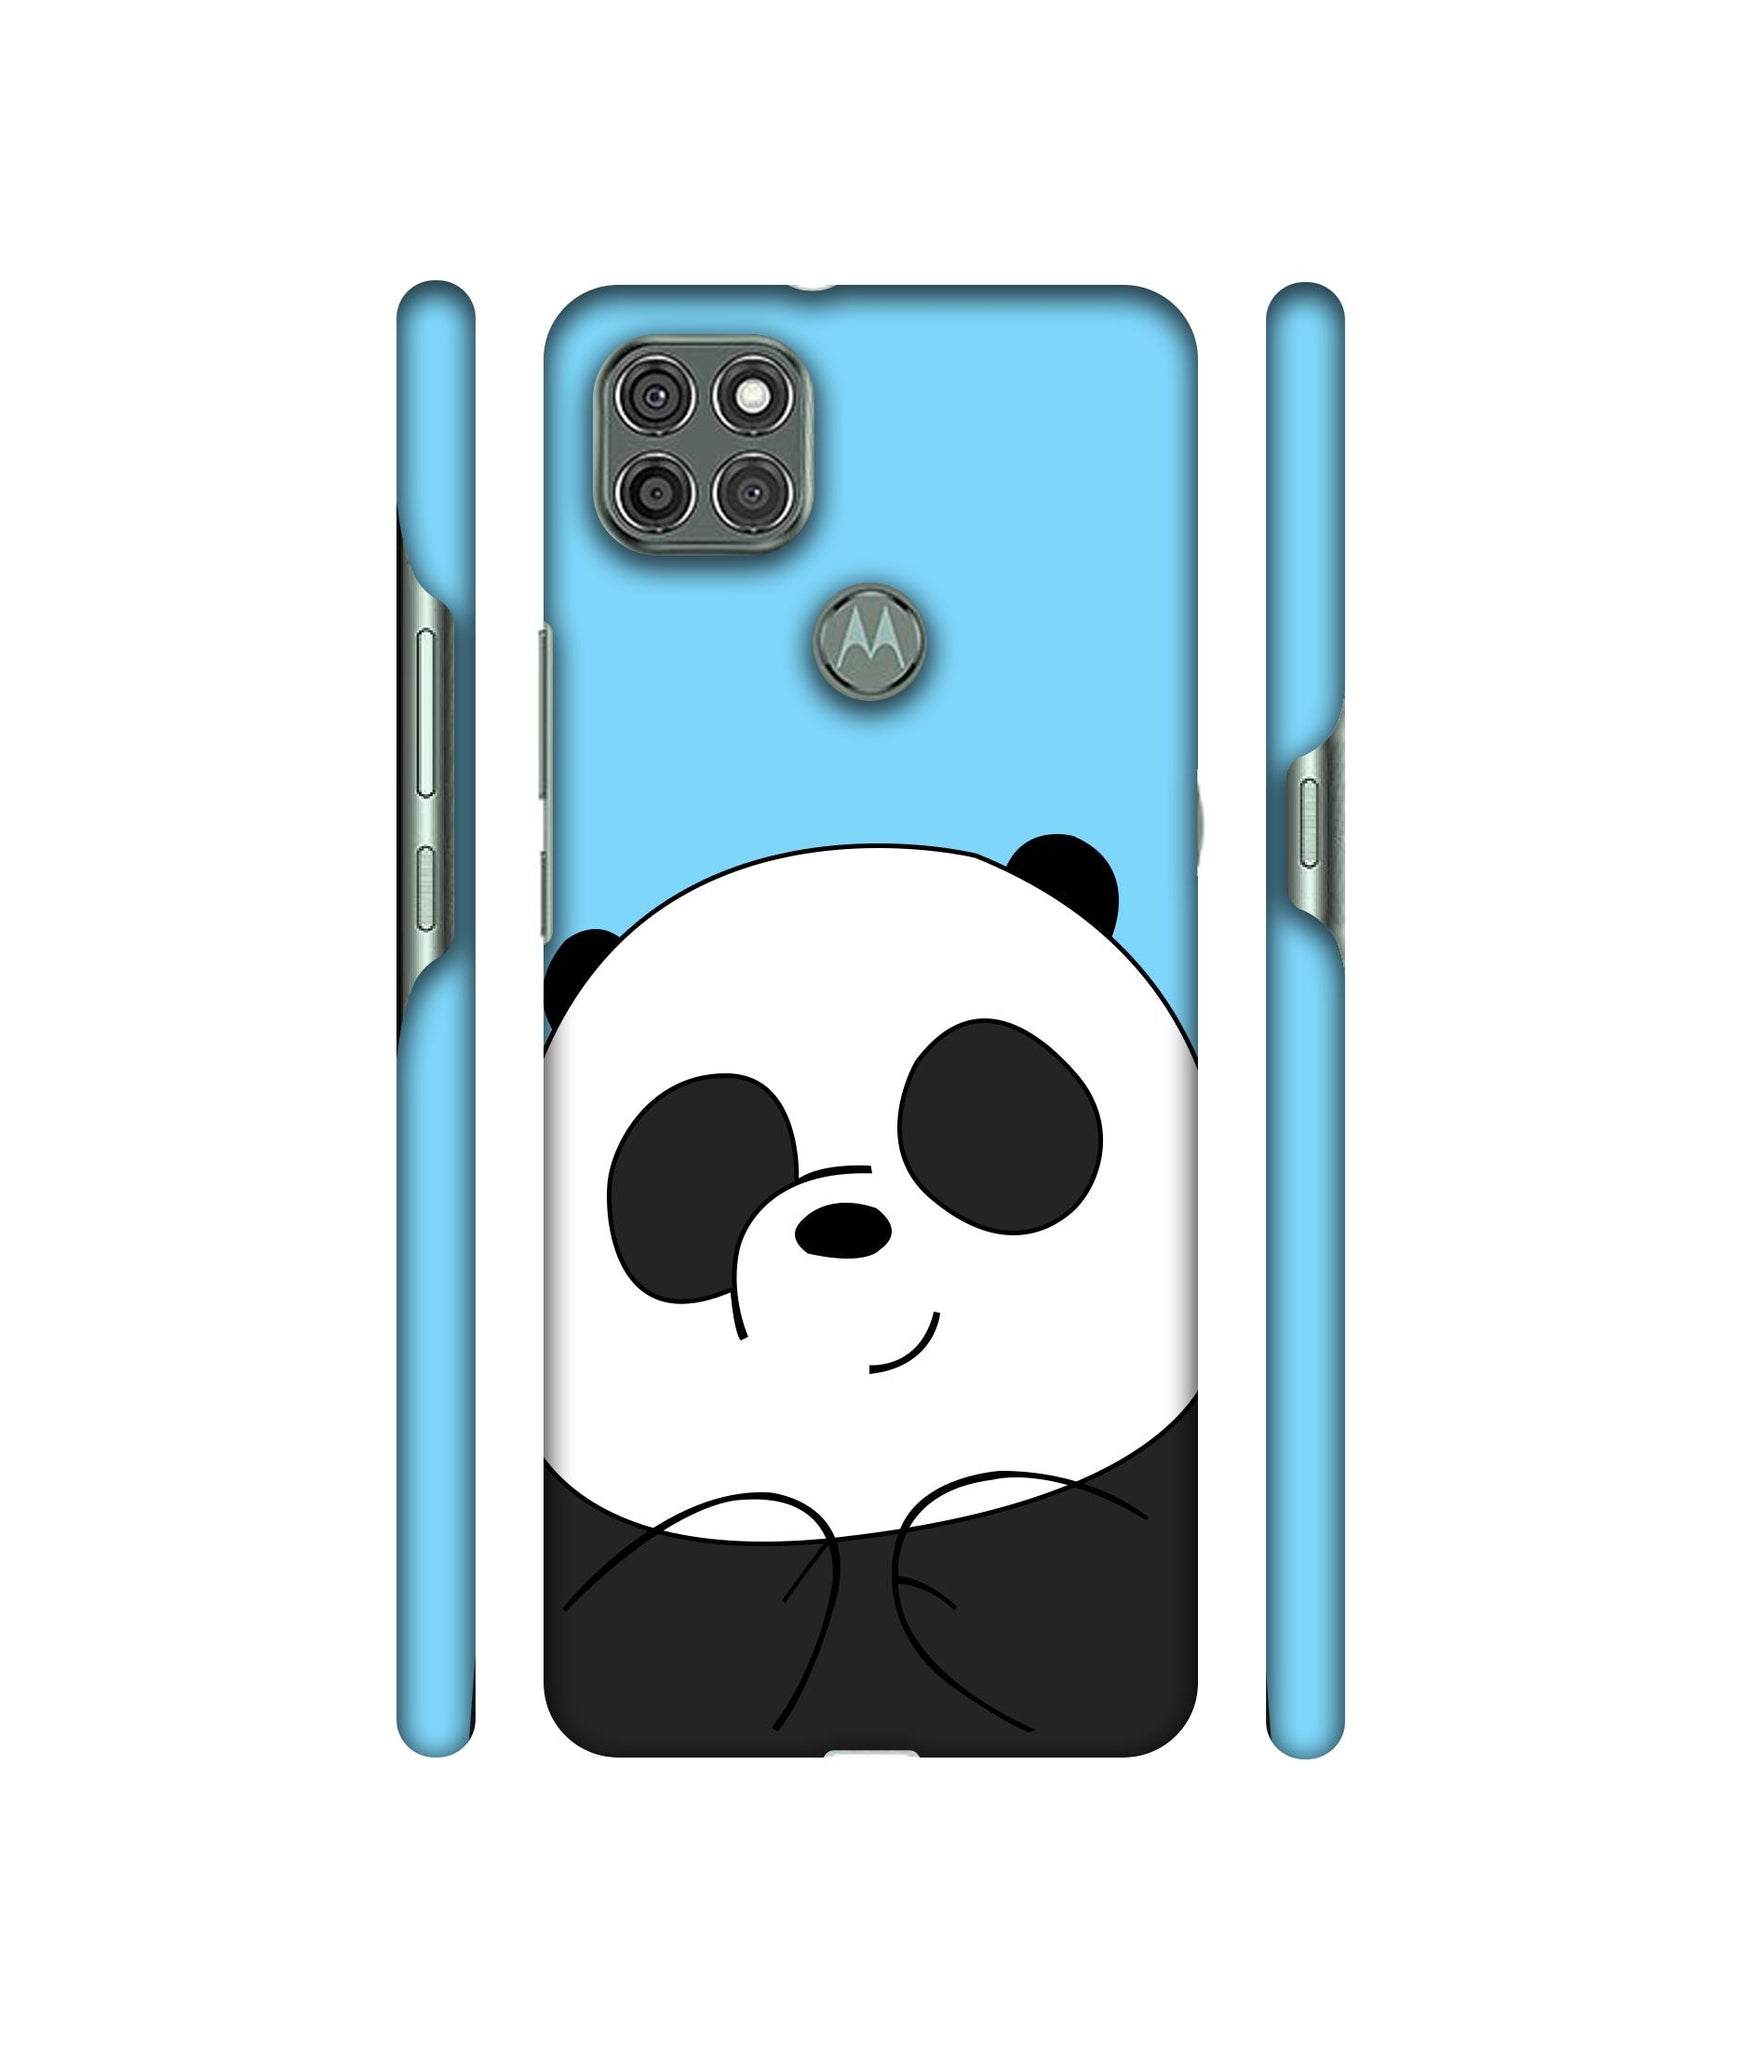 Cute Panda Designer Hard Back Cover for Motorola Moto G9 Power